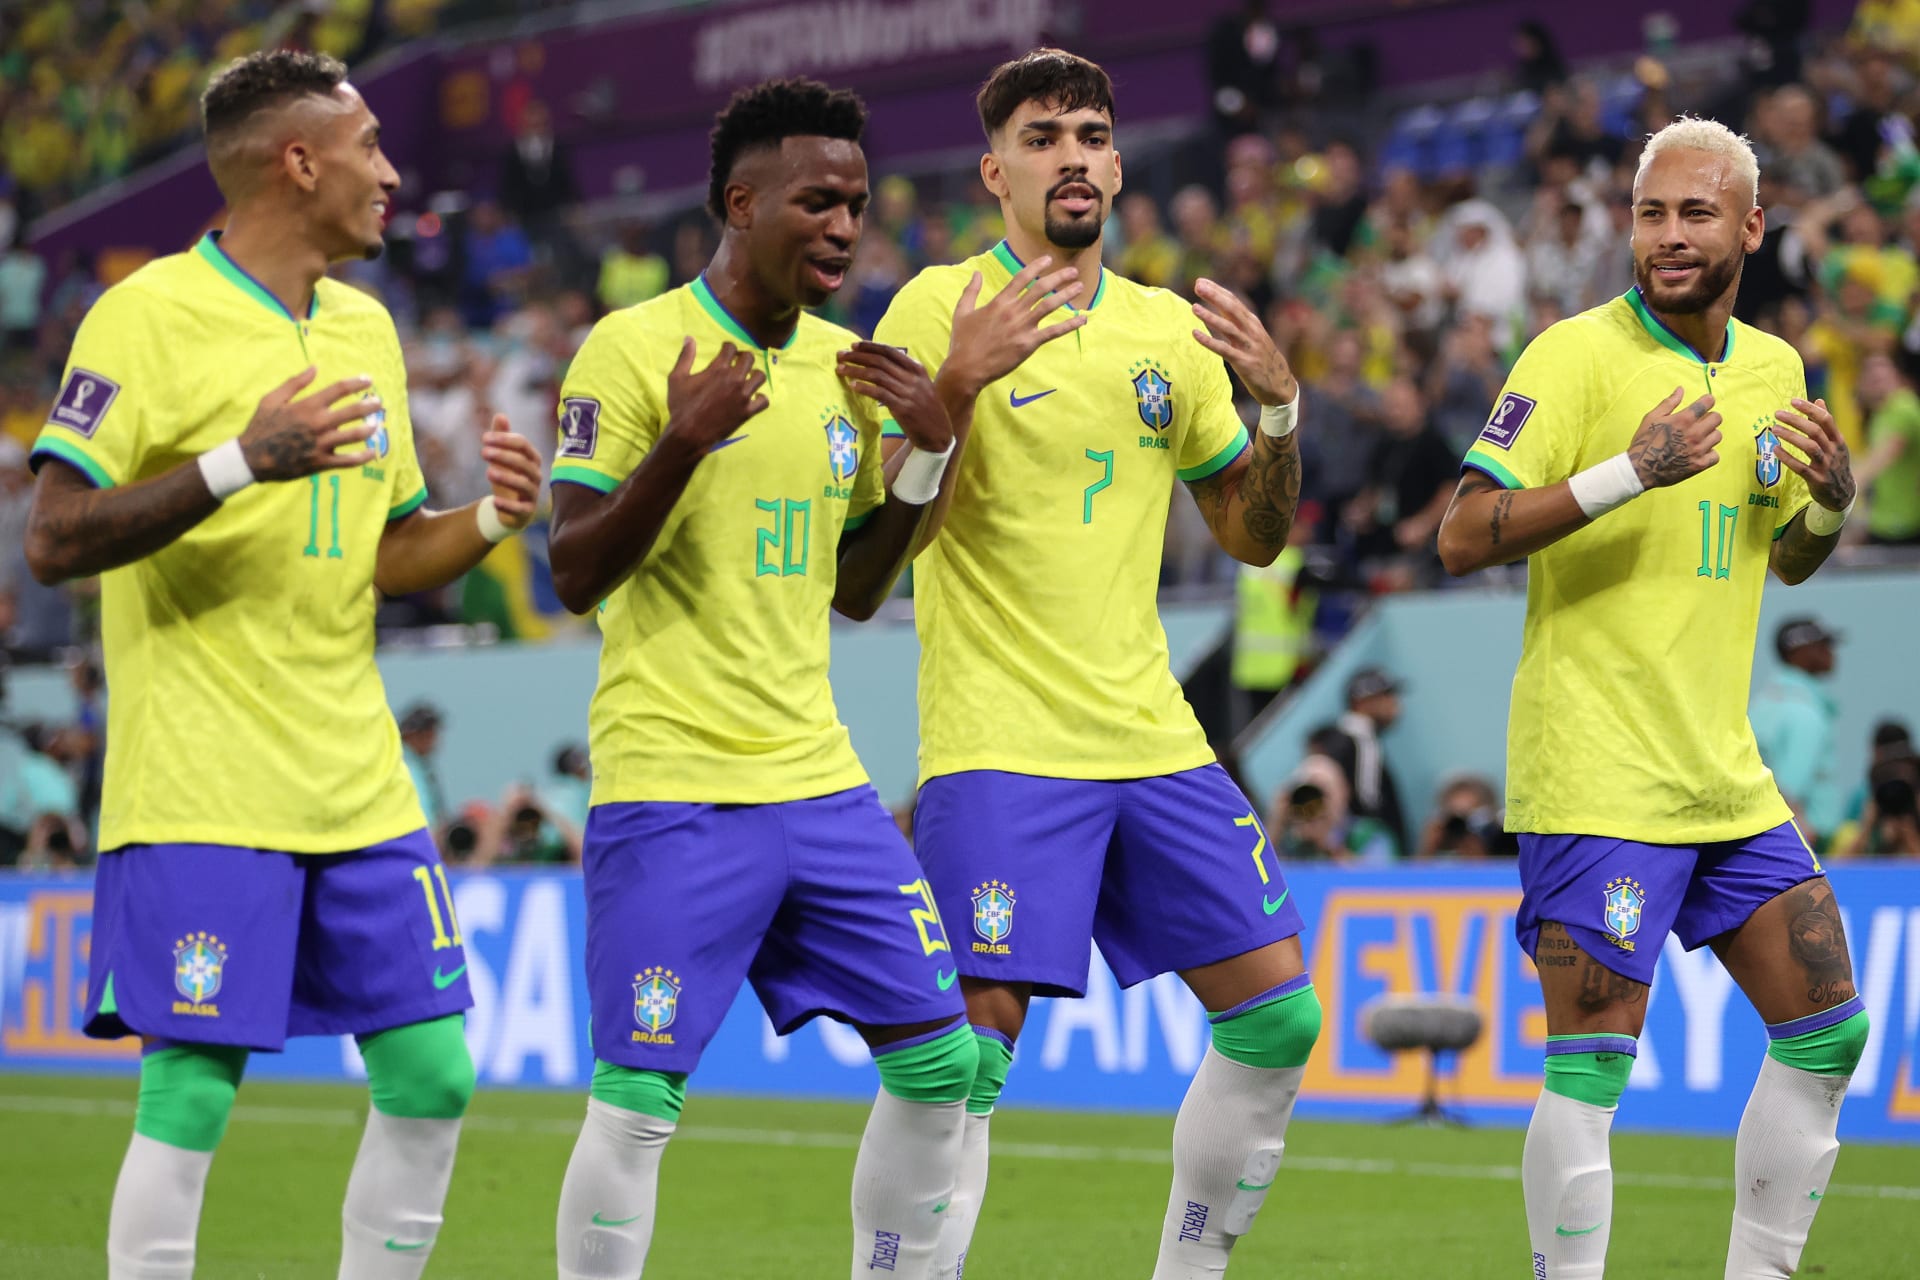 احتفال لاعبي البرازيل مع مدربهم بعد الفوز على "الشمشون الكوري" يثير تفاعلا - CNN Arabic